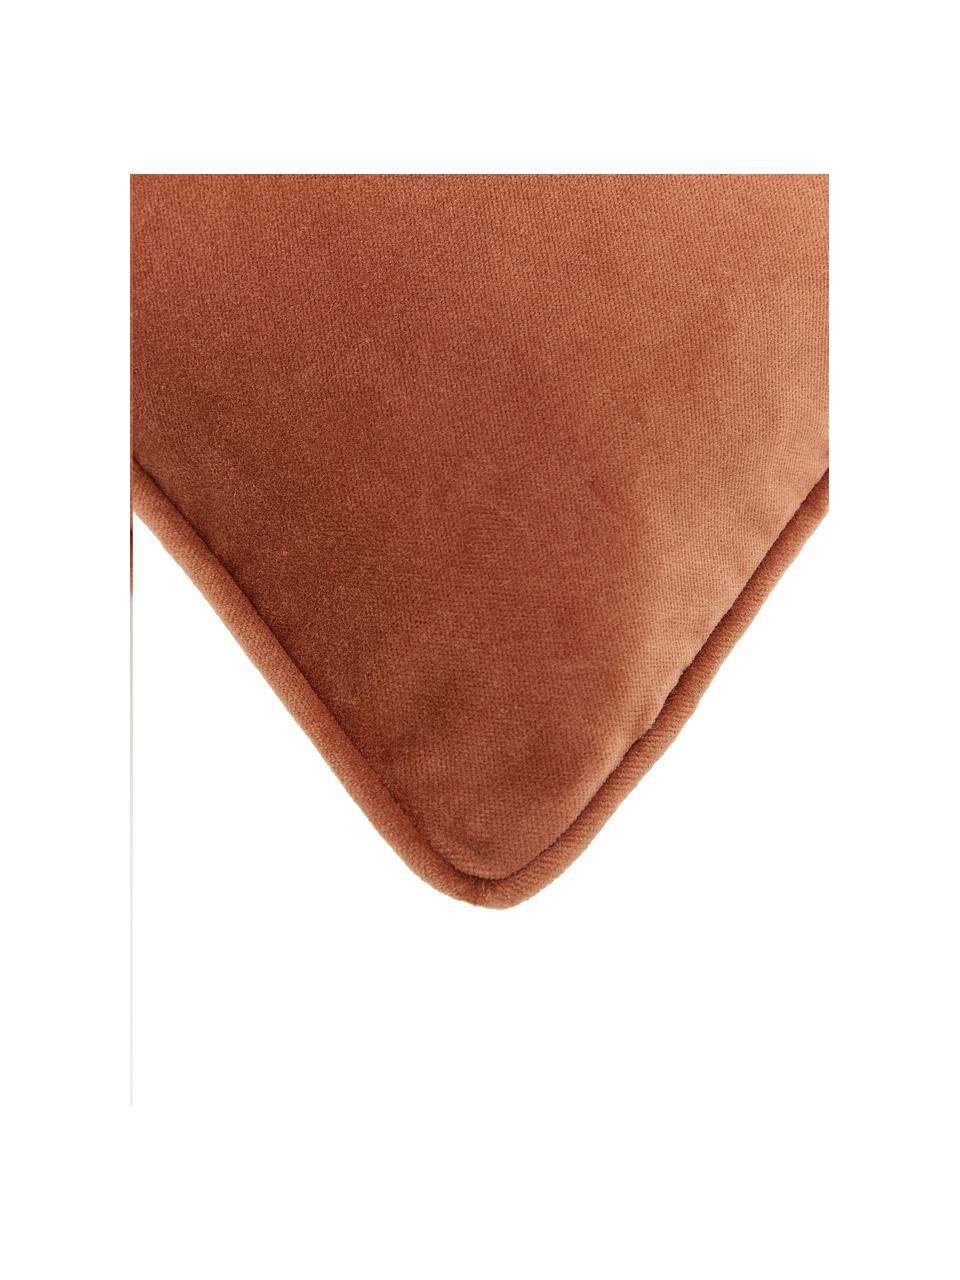 Poszewka na poduszkę z aksamitu Dana, 100% aksamit bawełniany, Rdzawoczerwony, S 30 x D 50 cm